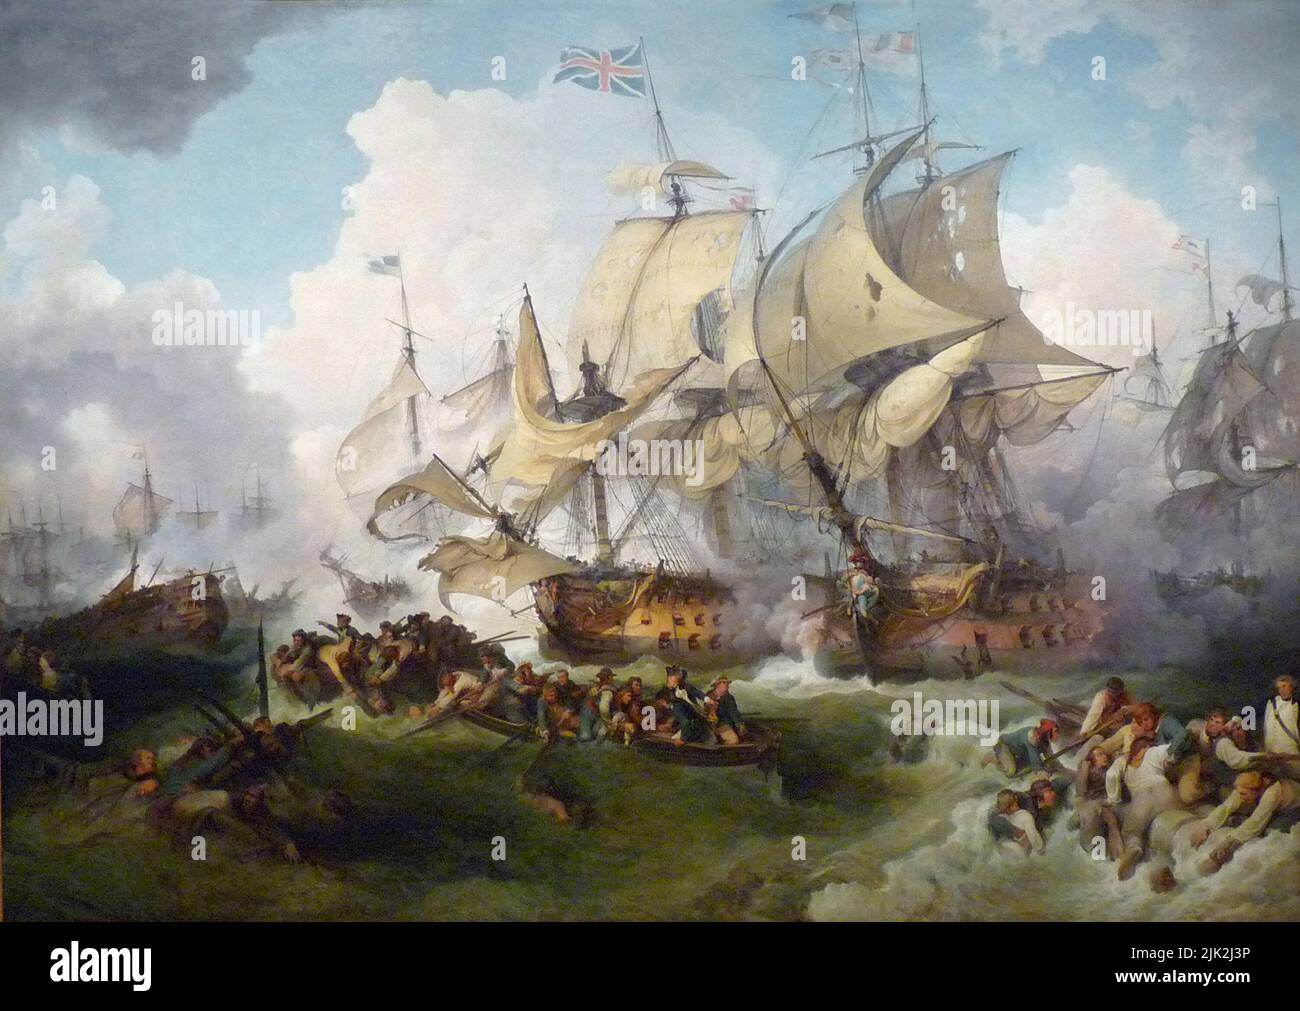 Der glorreiche erste Juni (1. Juni 1794), auch bekannt als die vierte Schlacht von Ushant, gemalt von Philip James de Loutherbourg. Dies war die größte Seeschlacht im Krieg der Ersten Koalition und führte zu einer Niederlage für die Franzosen. Stockfoto